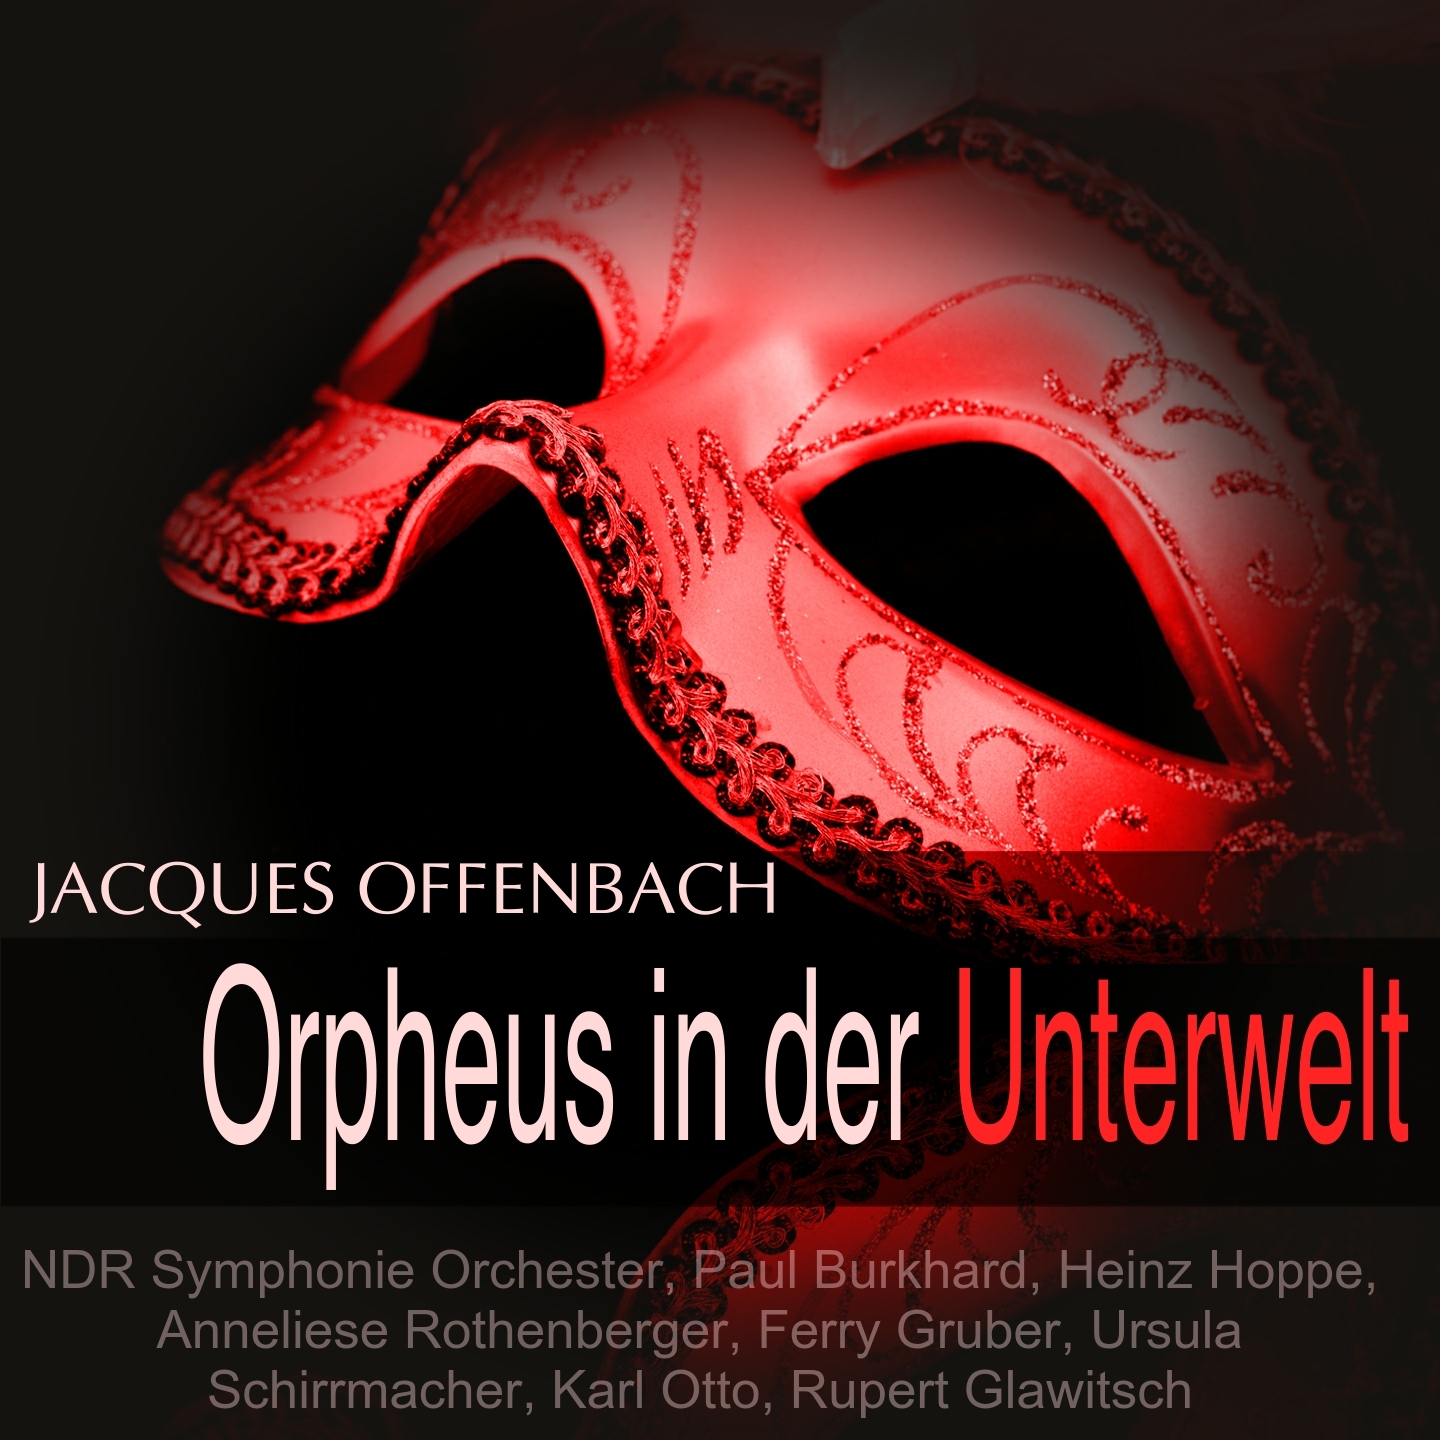 Orpheus in der Unterwelt: "Wohlan, reizende Bacchantin" (Jupiter, Eurydike, Chor)